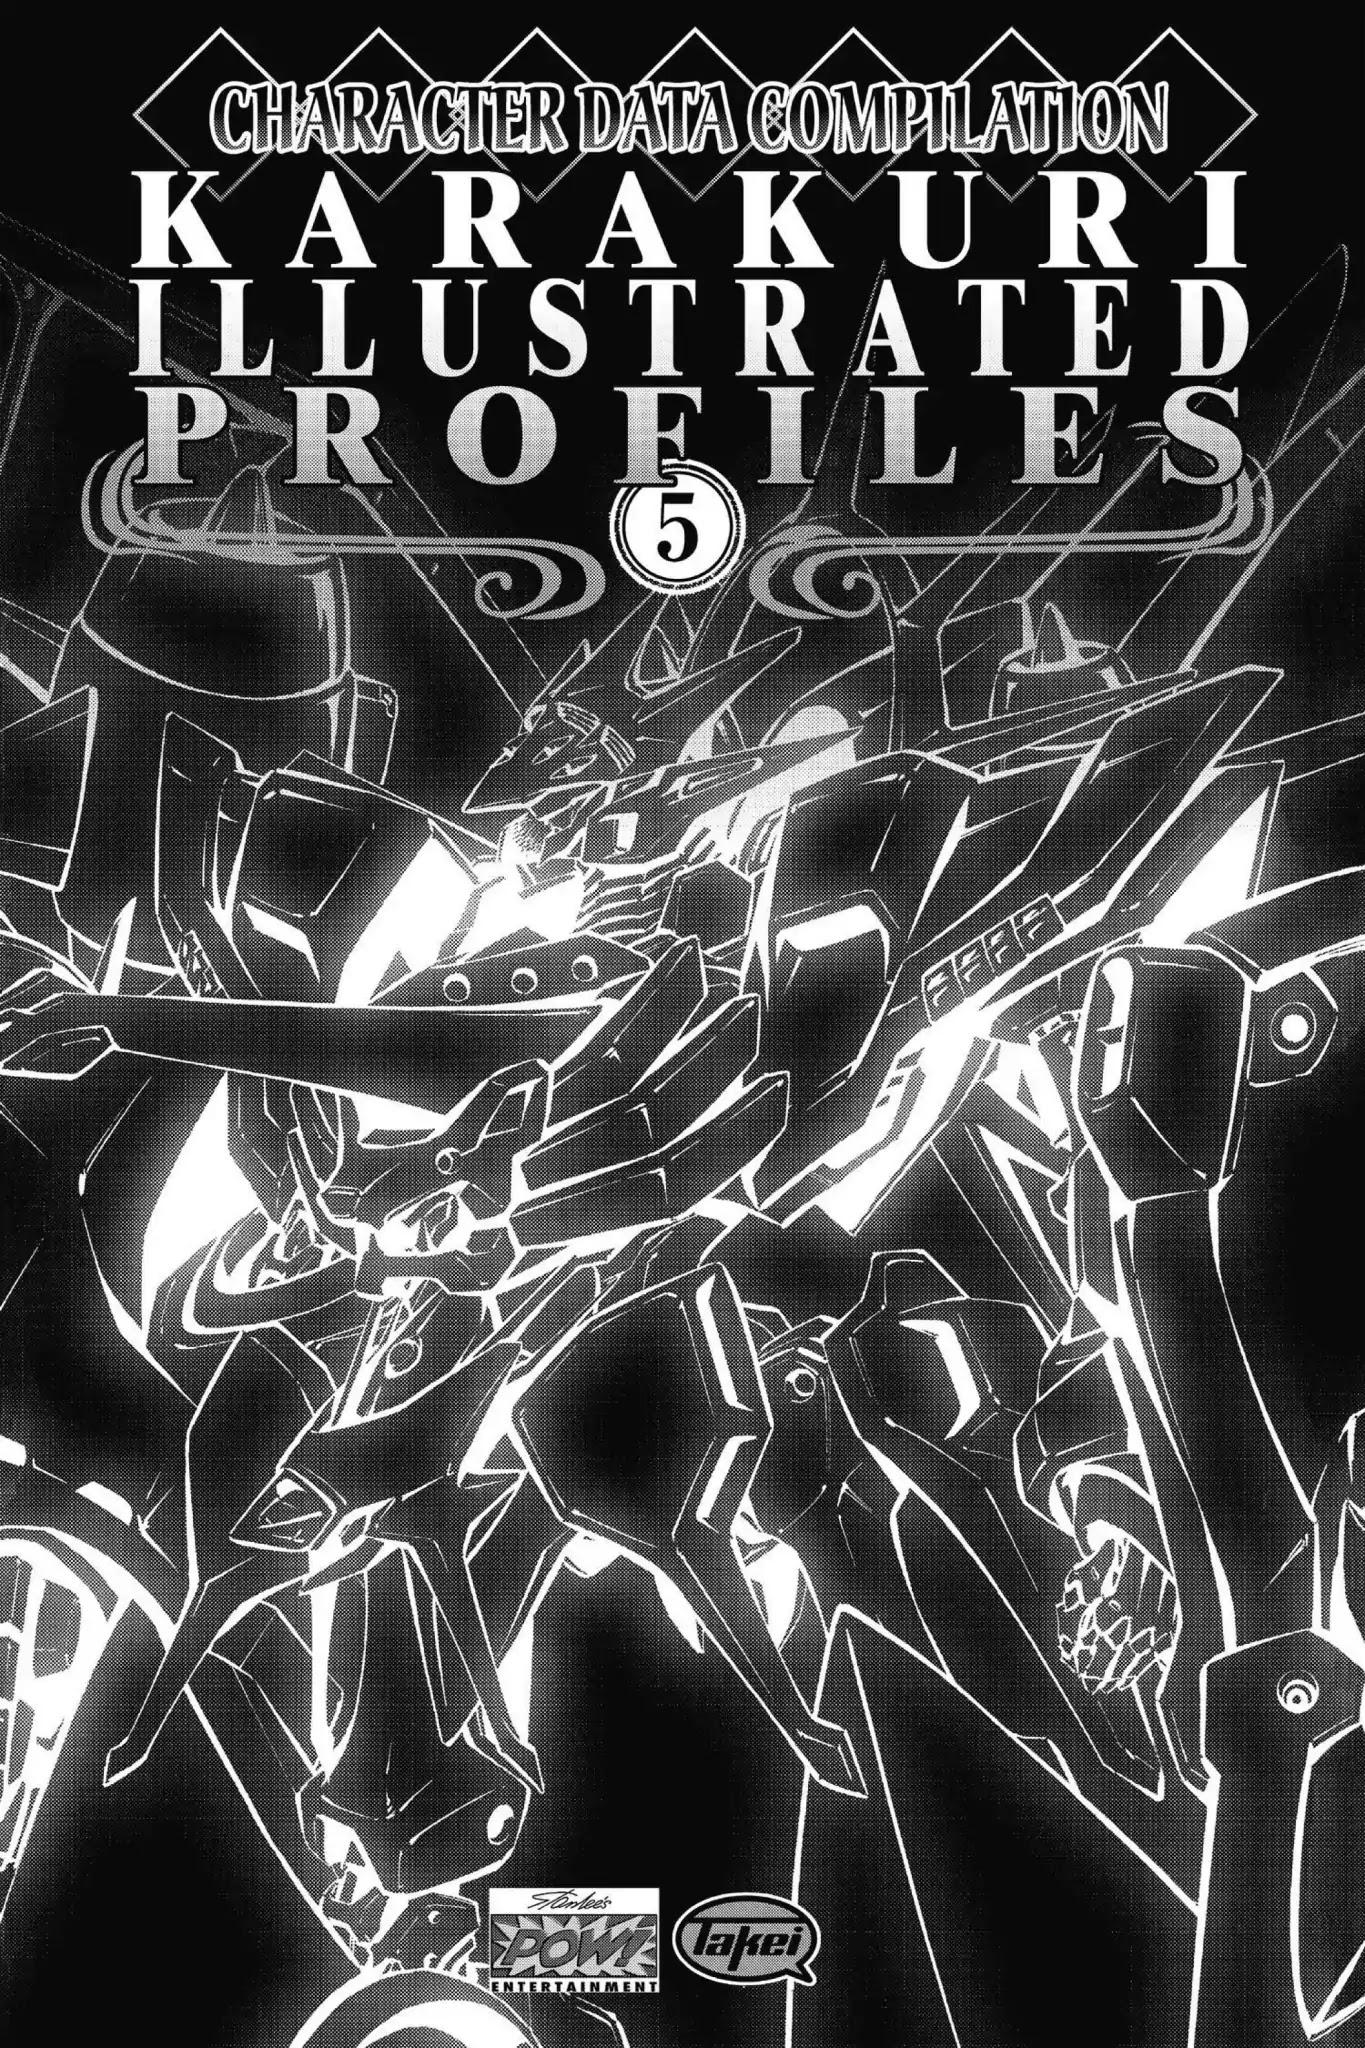 Karakuridouji Ultimo Chapter 51.5: Vol.12 Bonus Material: Karakuri Illustrated Profiles - Picture 1